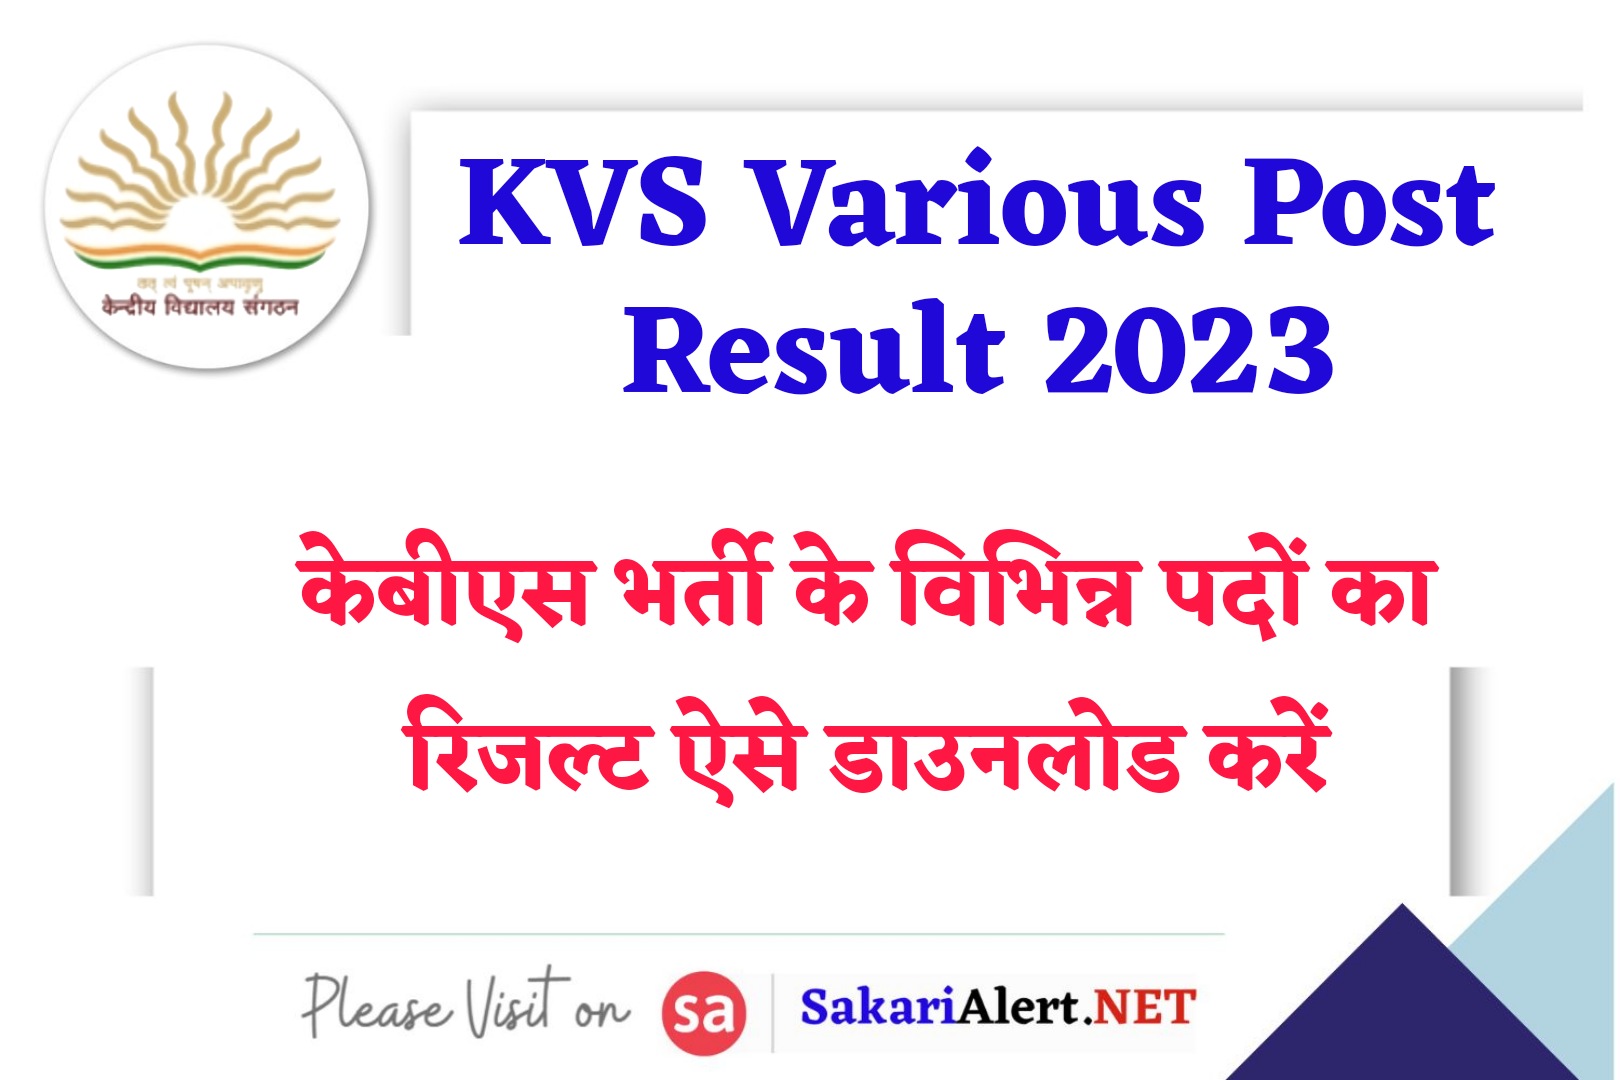 KVS Various Post Result 2023 with Cut off | केंद्रीय विद्यालय समिति के सभी पदों का रिजल्ट जारी